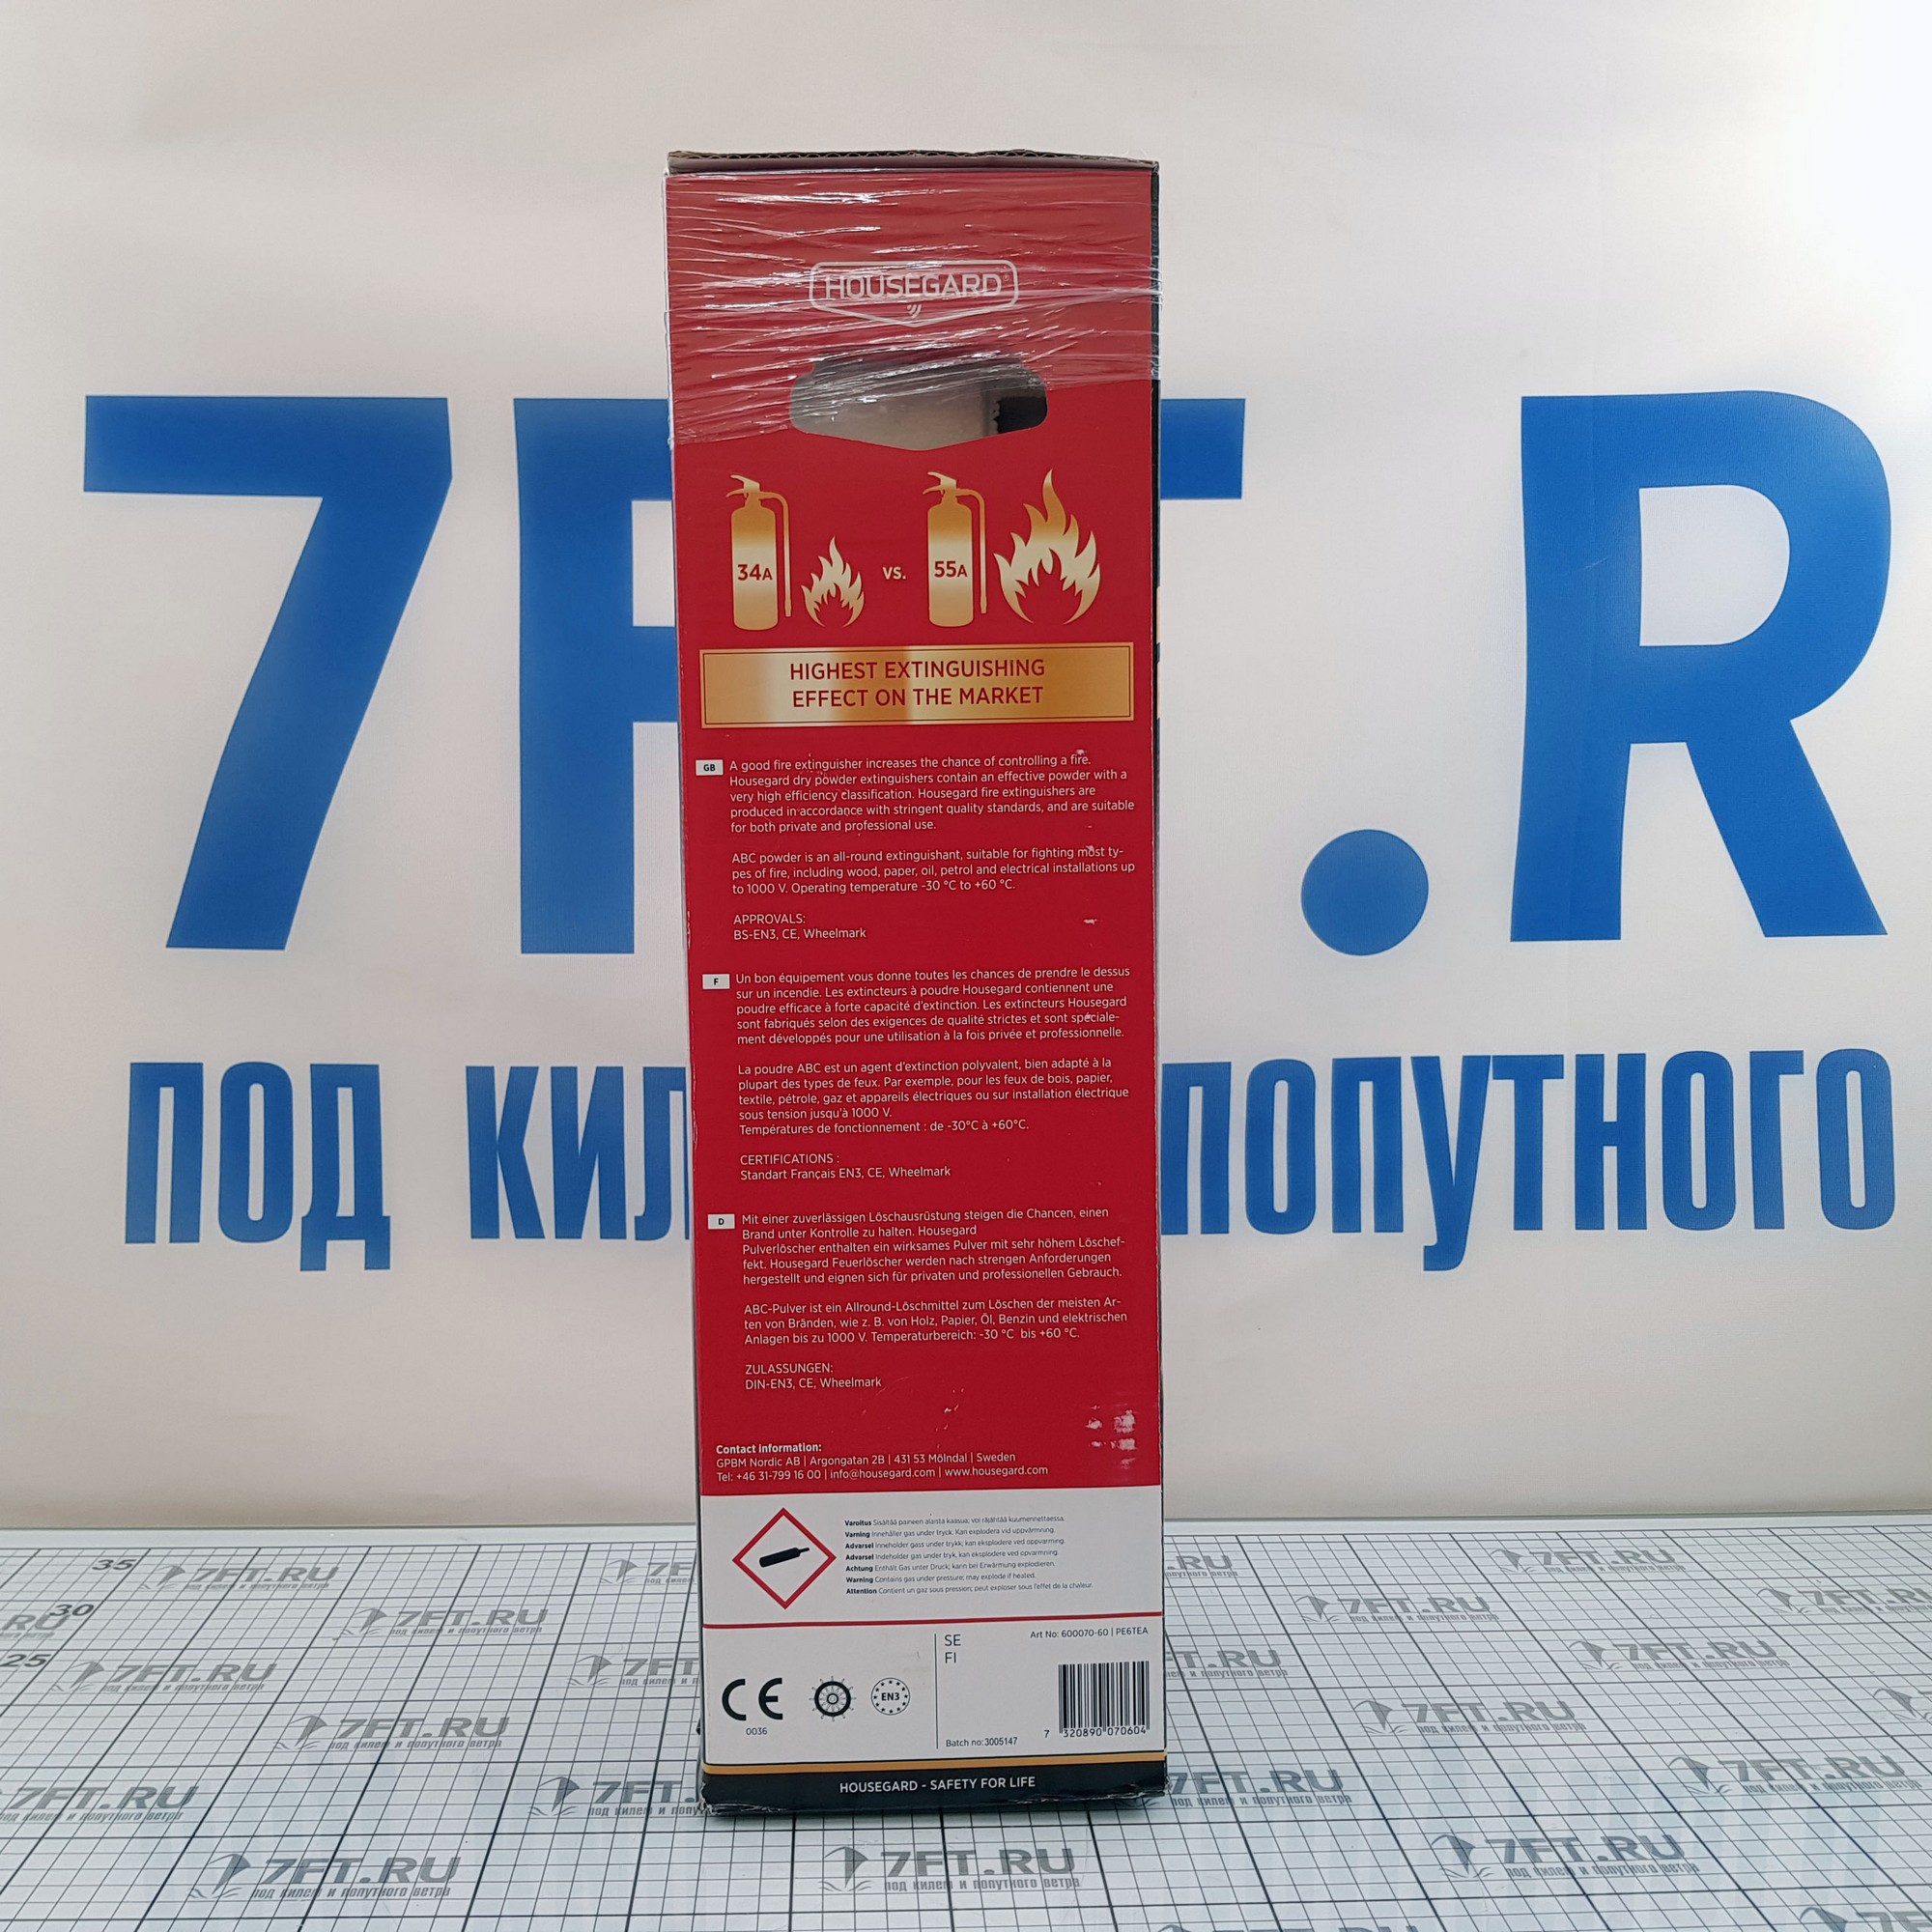 Купить Порошковый огнетушитель Housegard 600070-60 6 кг для судов, купить спасательное снаряжение в интернет-магазине 7ft.ru в интернет магазине Семь Футов